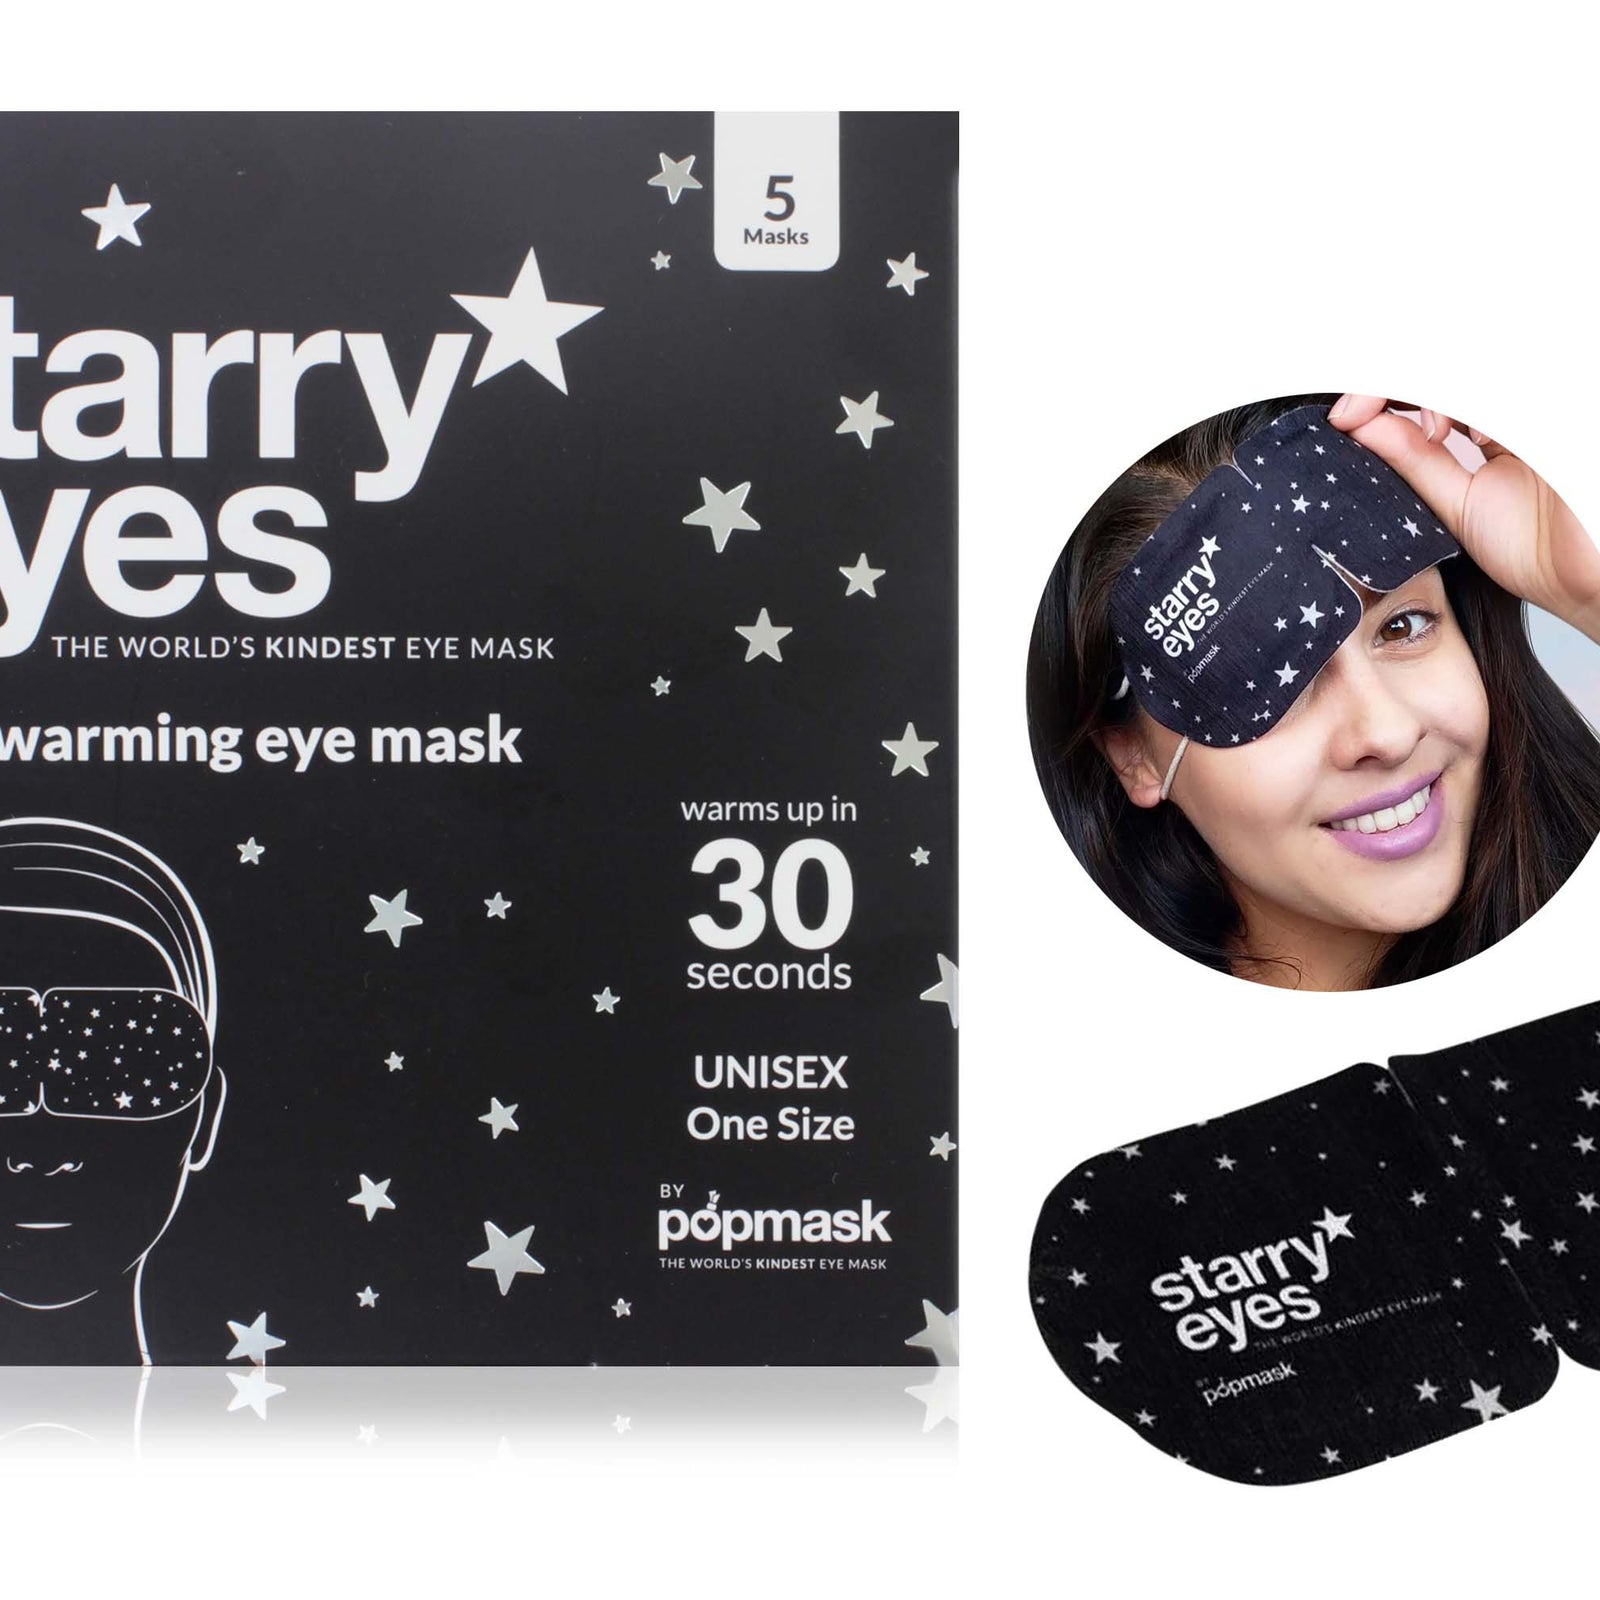 Starry Eyes Self-Warming Eye Mask 5 Piece Set